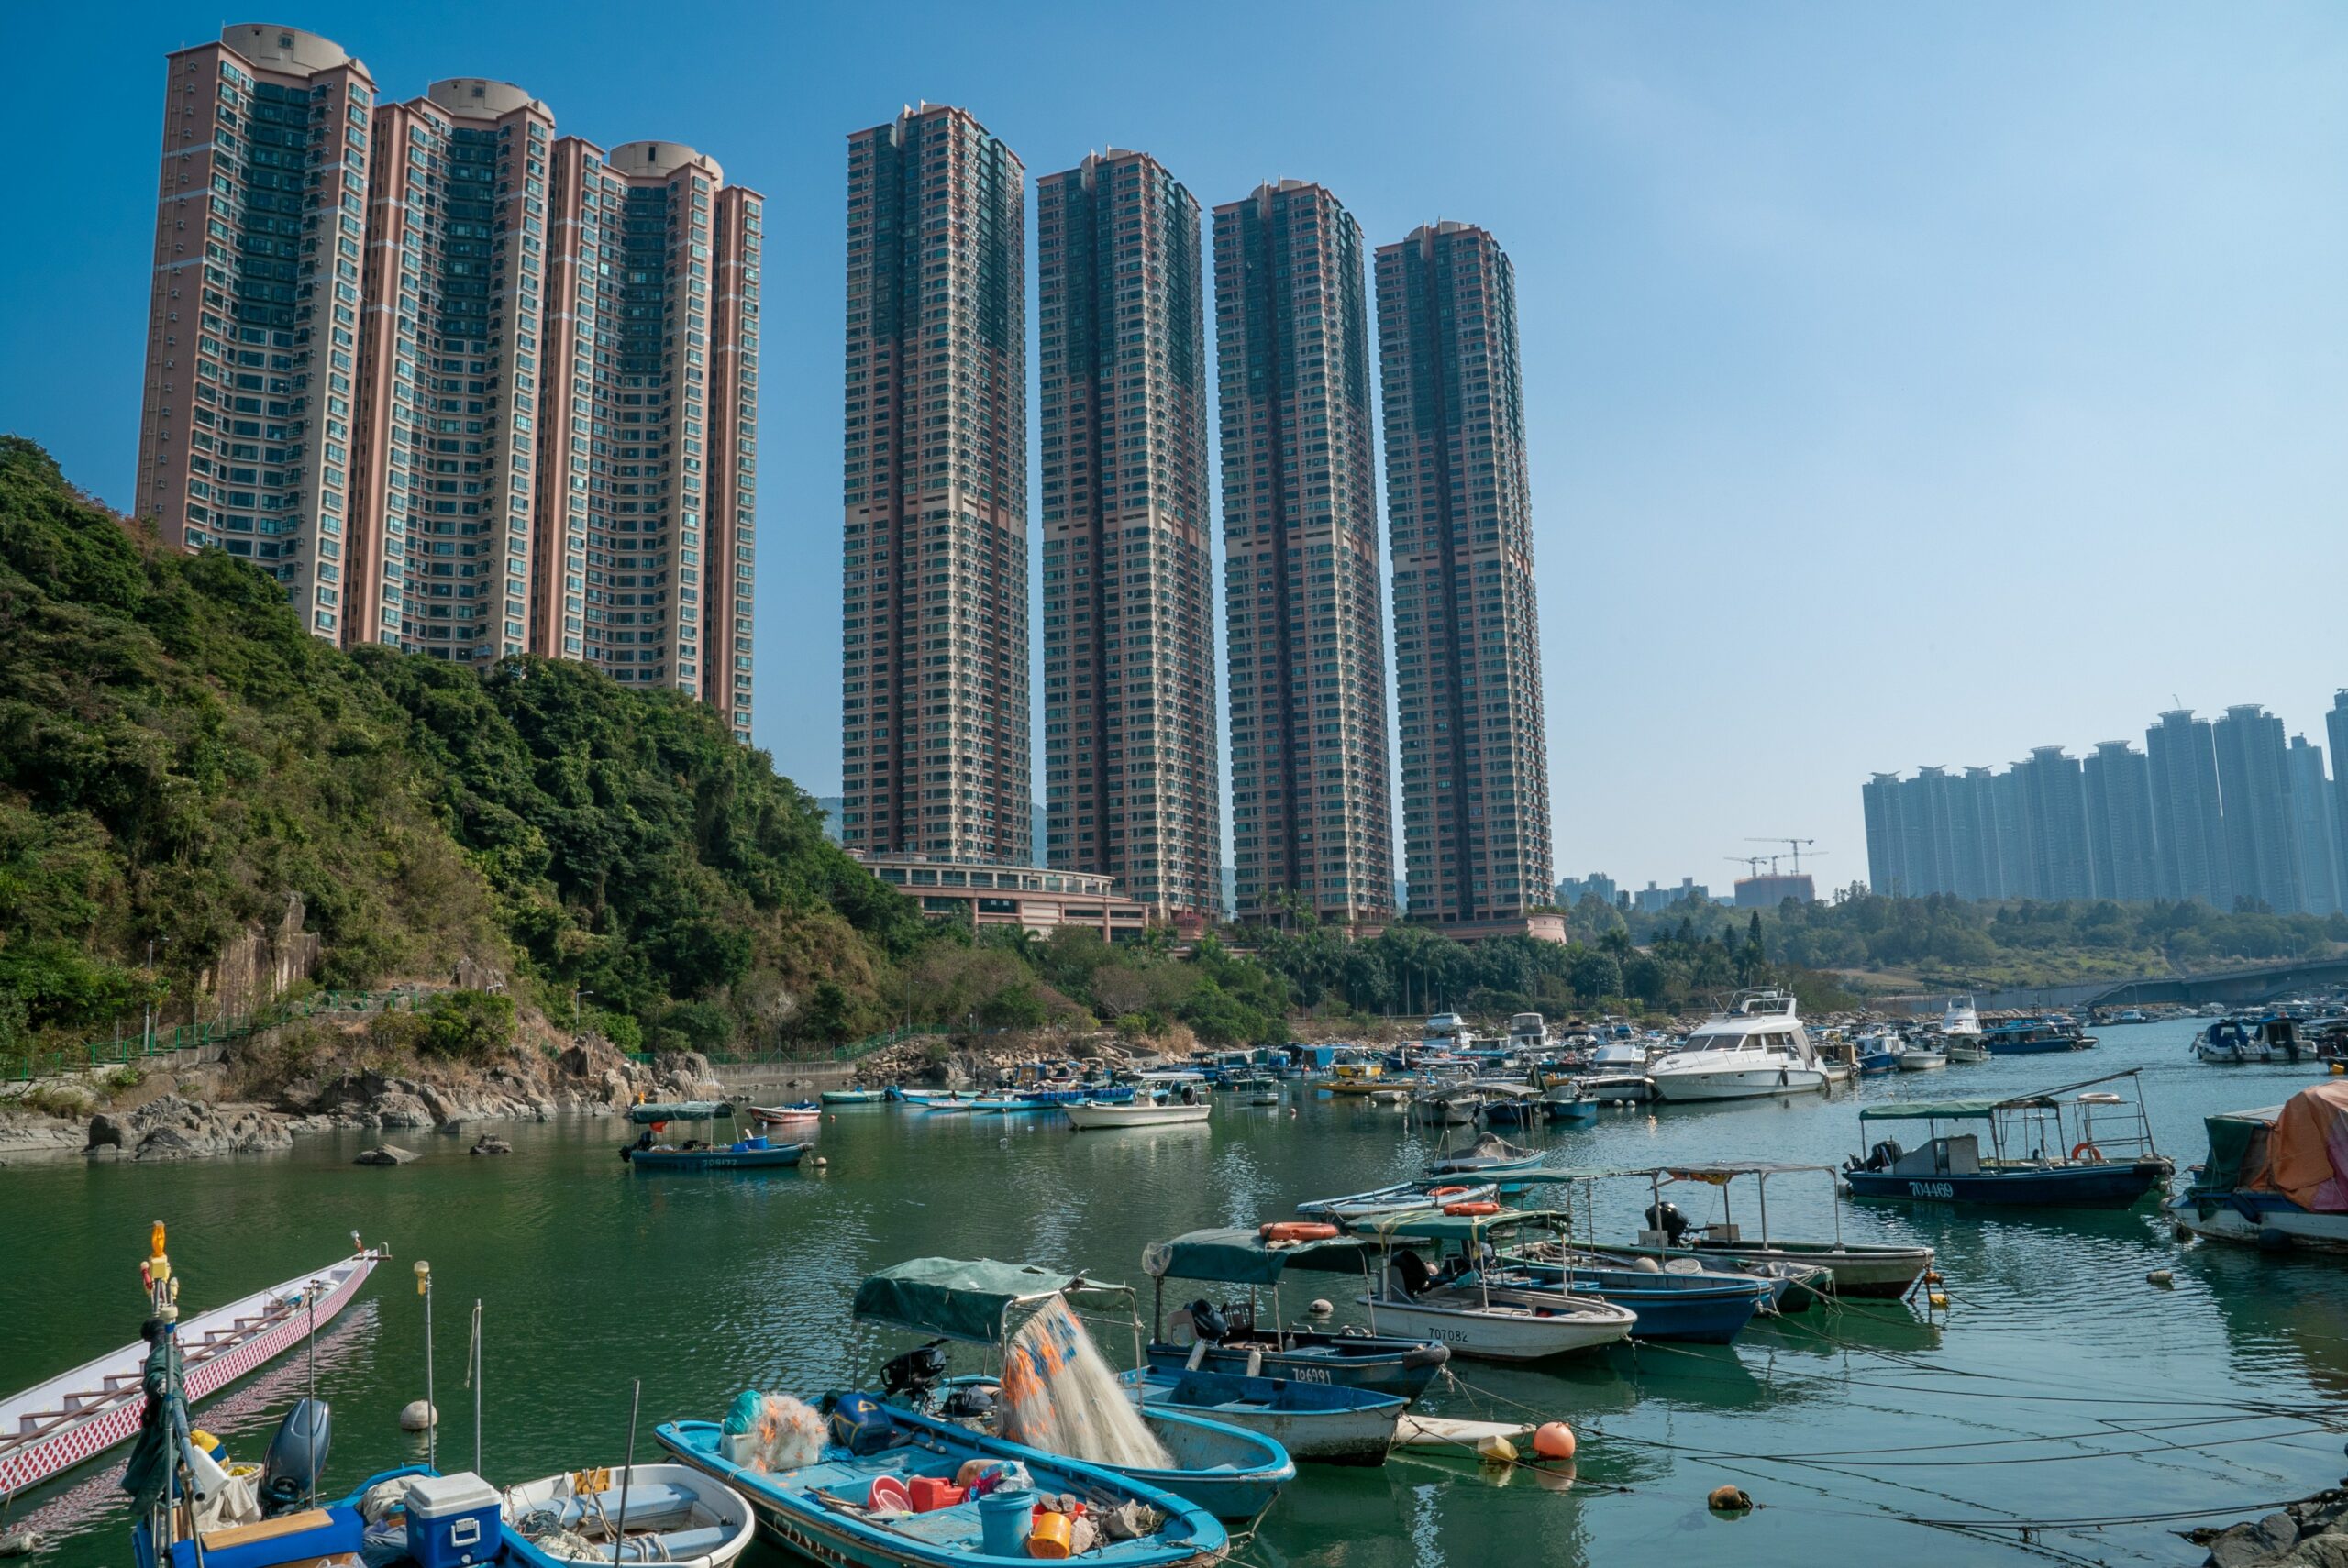 hong kong towers overlooking fishing boats and bay